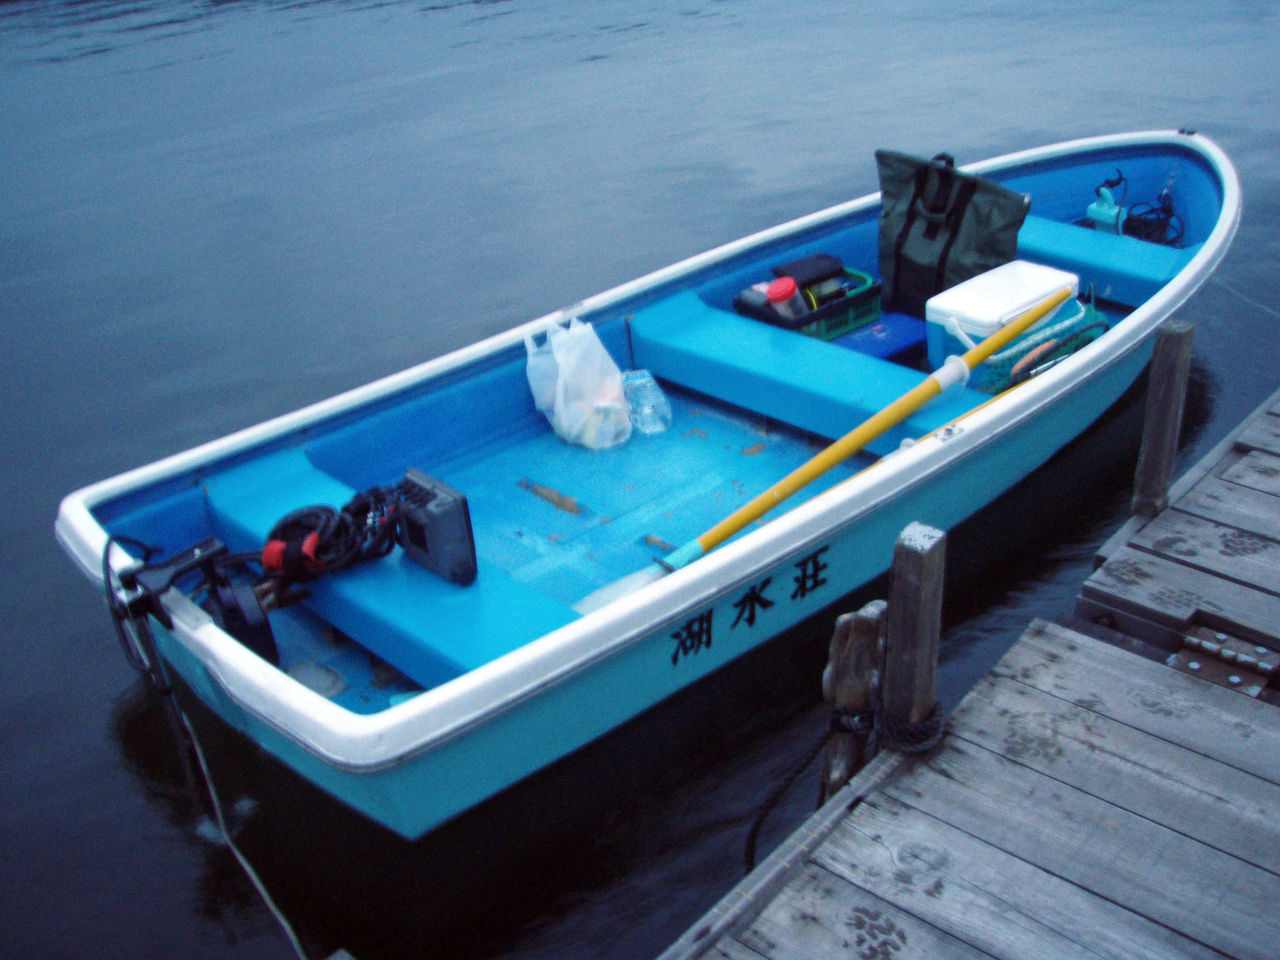 芦ノ湖釣り講座 貸ボートで気をつけておきたい3つのこと 芦ノ湖ヘッポコ釣り日記 3 Since 07